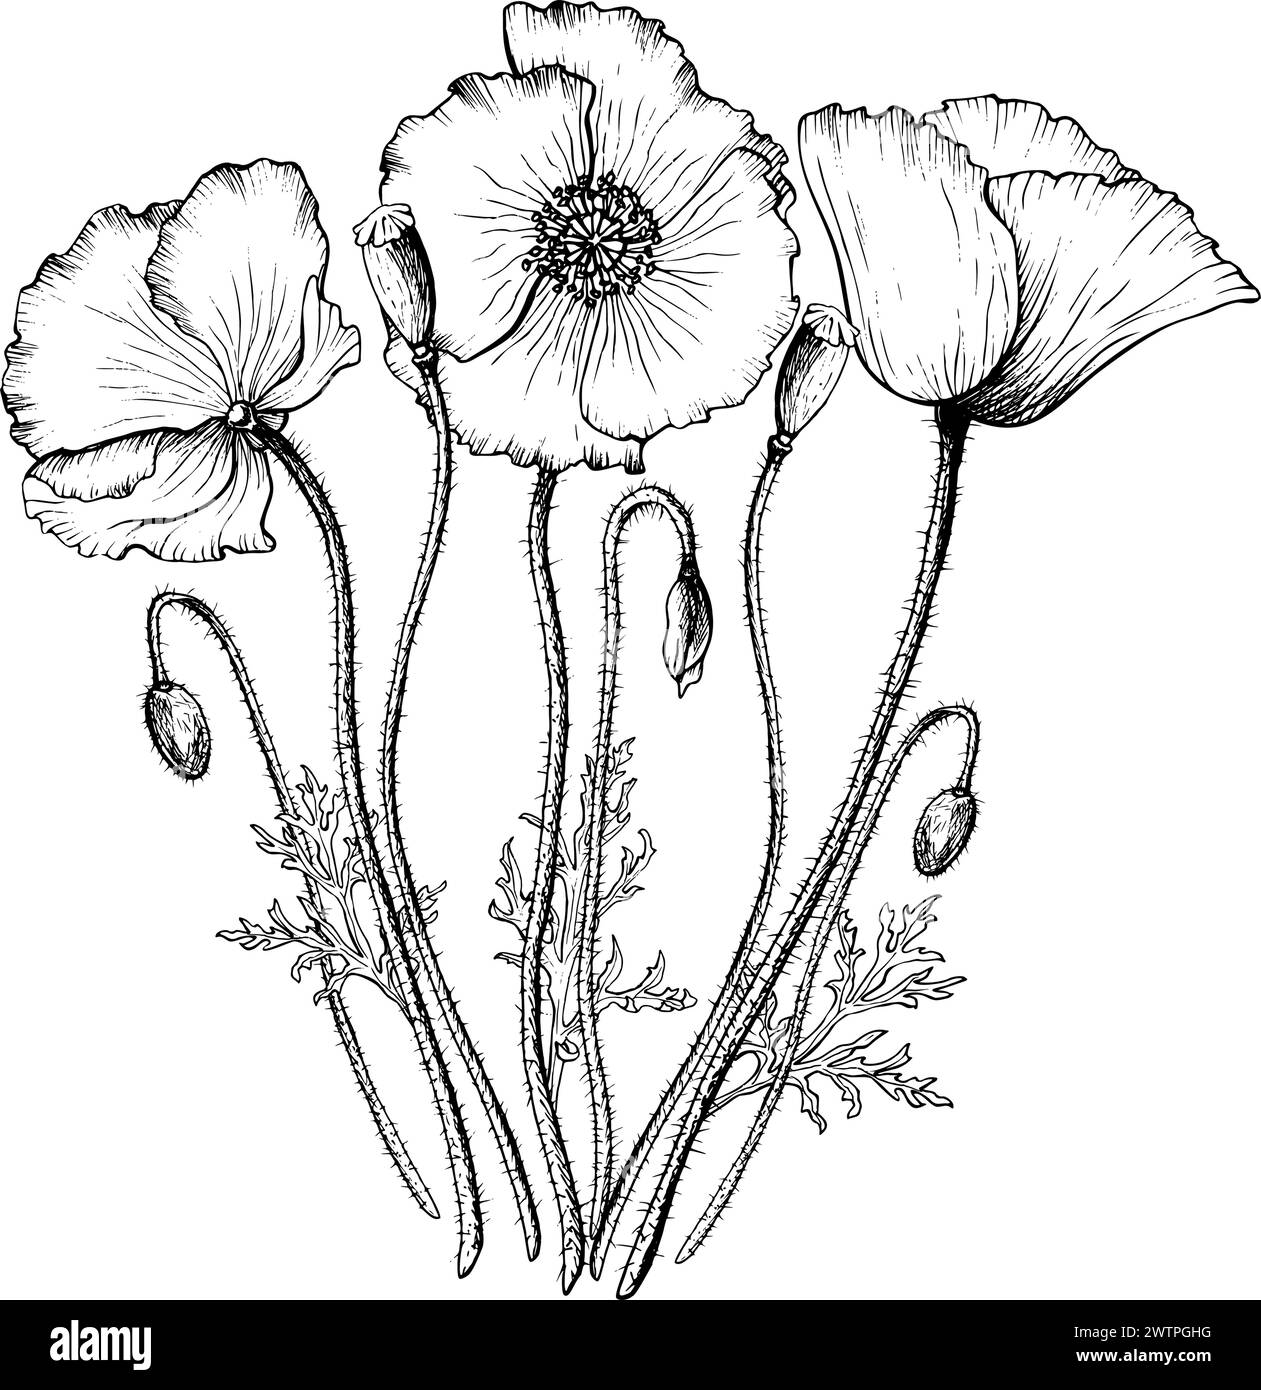 Composizione grafica di fiori e gemme di papavero in fiore. Illustrazione vettoriale botanica disegnata a mano in stile contorno. Illustrazione Vettoriale